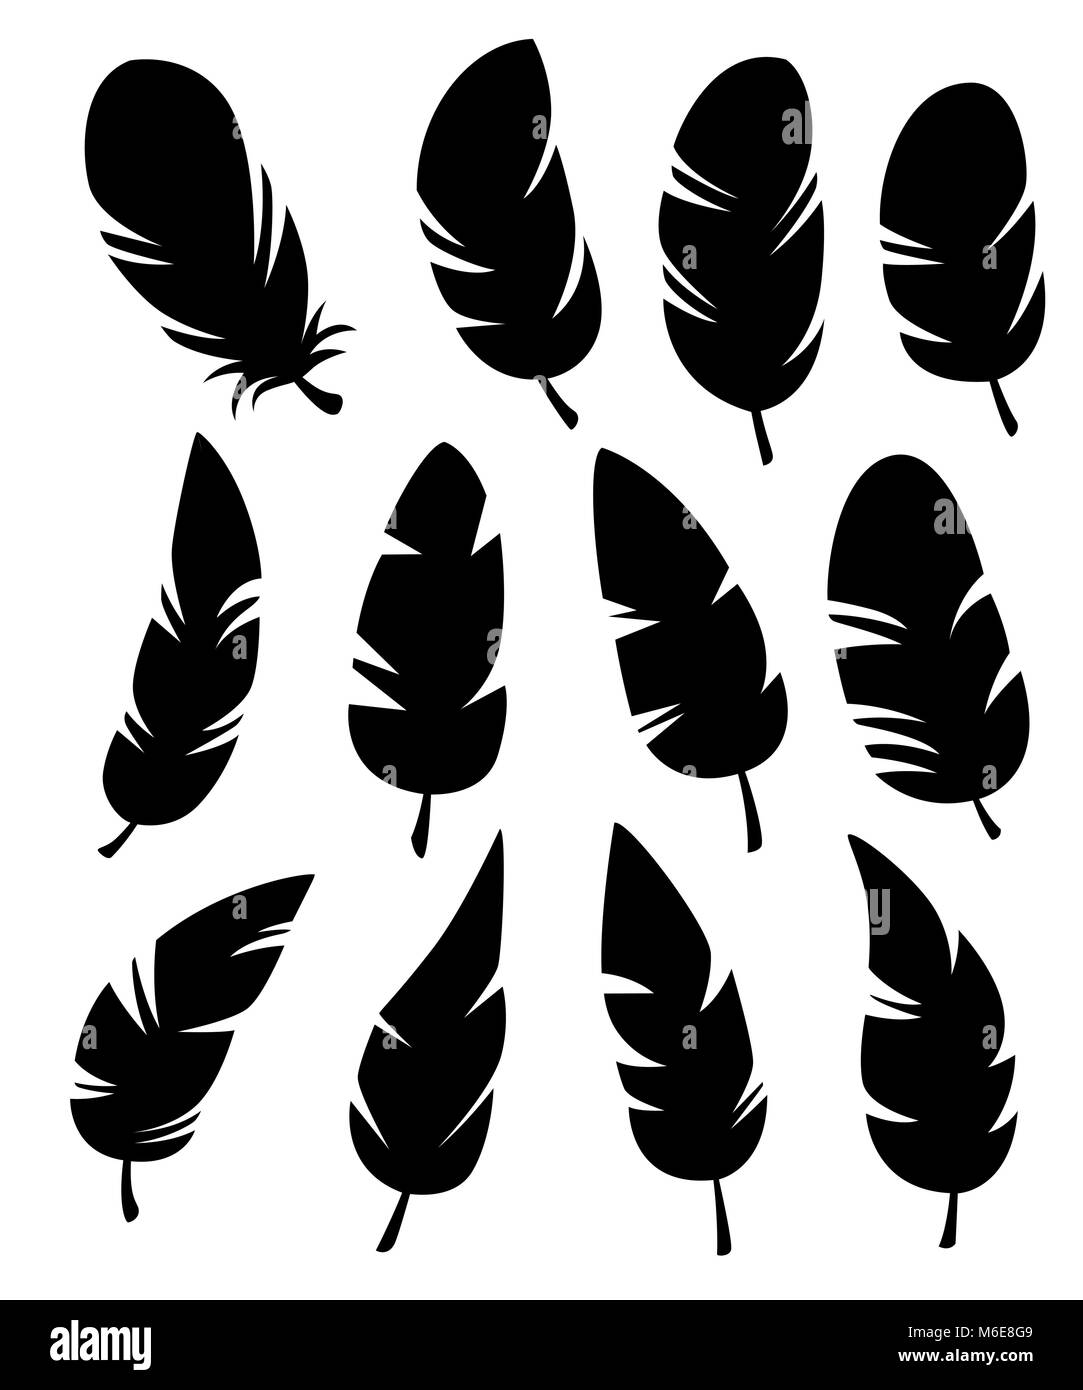 Federn in verschiedenen Formen Vektor in einem flachen Stil. Symbole Federn auf einem weißen Hintergrund. Sammlung von Silhouetten der schwarzen Federn Stock Vektor